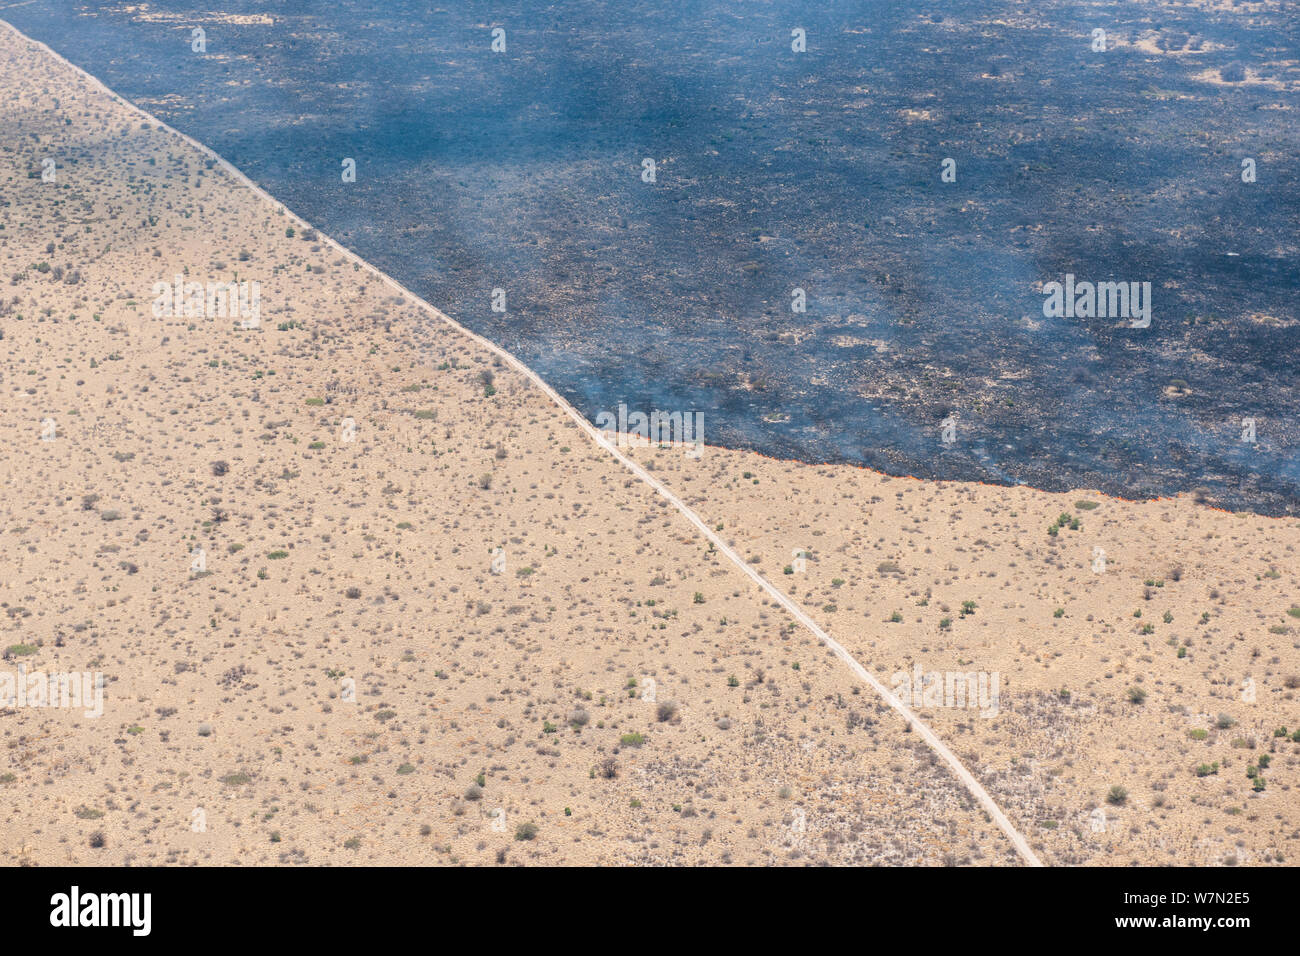 Vista aerea del bushfire nel deserto del Kalahari, mostrando una strada di polvere che agisce come un fuoco pausa, tali incendi sono normalmente accesa da un fulmine all'inizio della stagione delle piogge, Botswana, Novembre Foto Stock